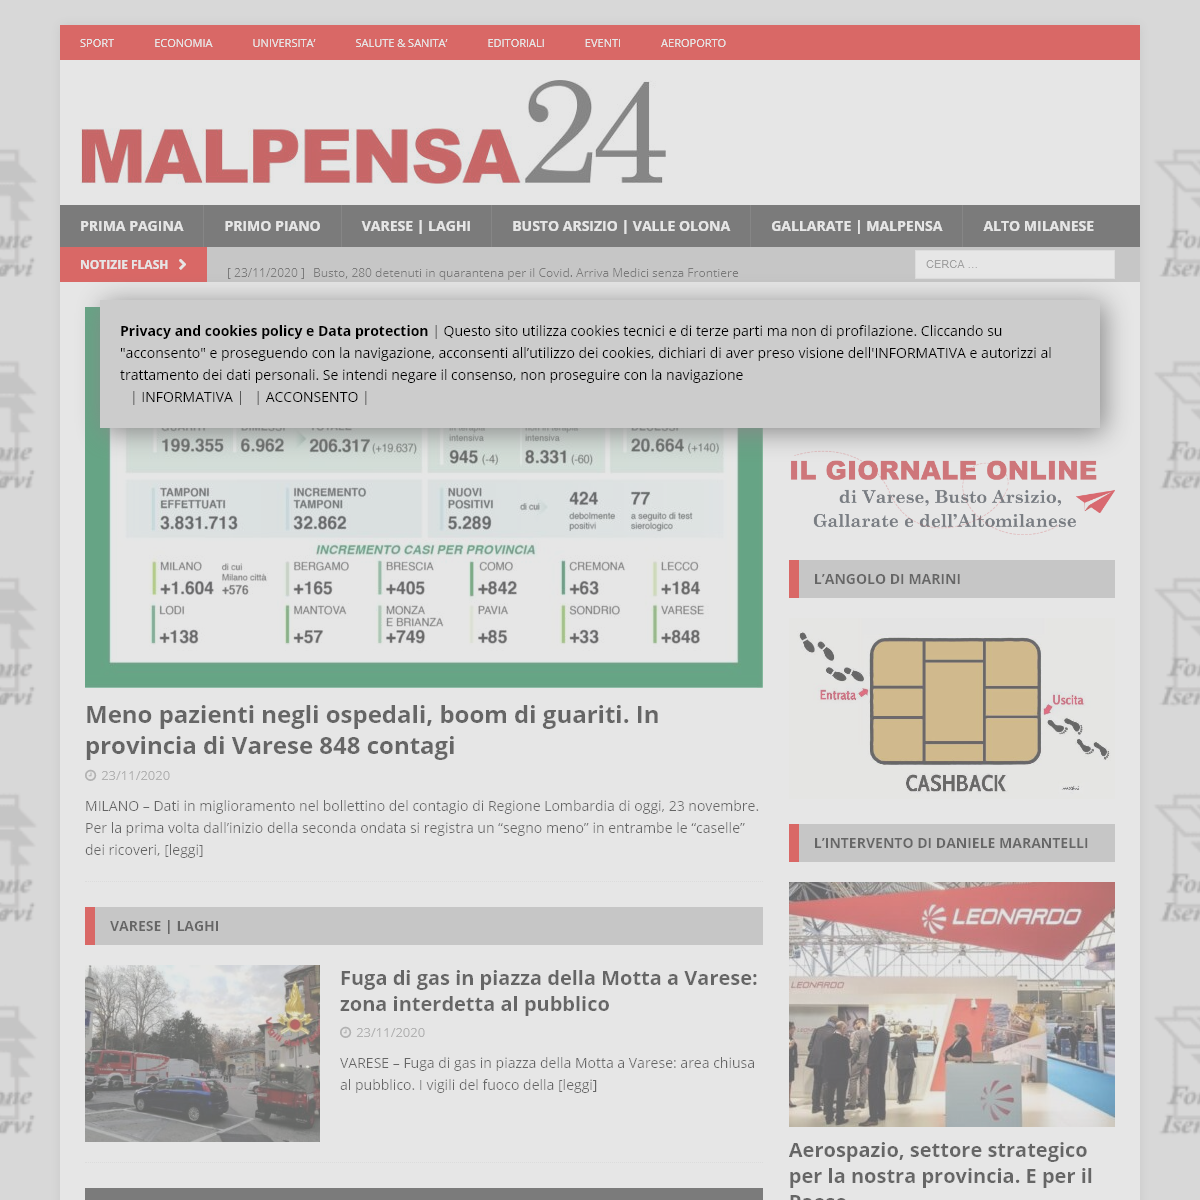 MALPENSA24 - News in tempo reale - Cronaca, politica, economia, sport e aeroporto